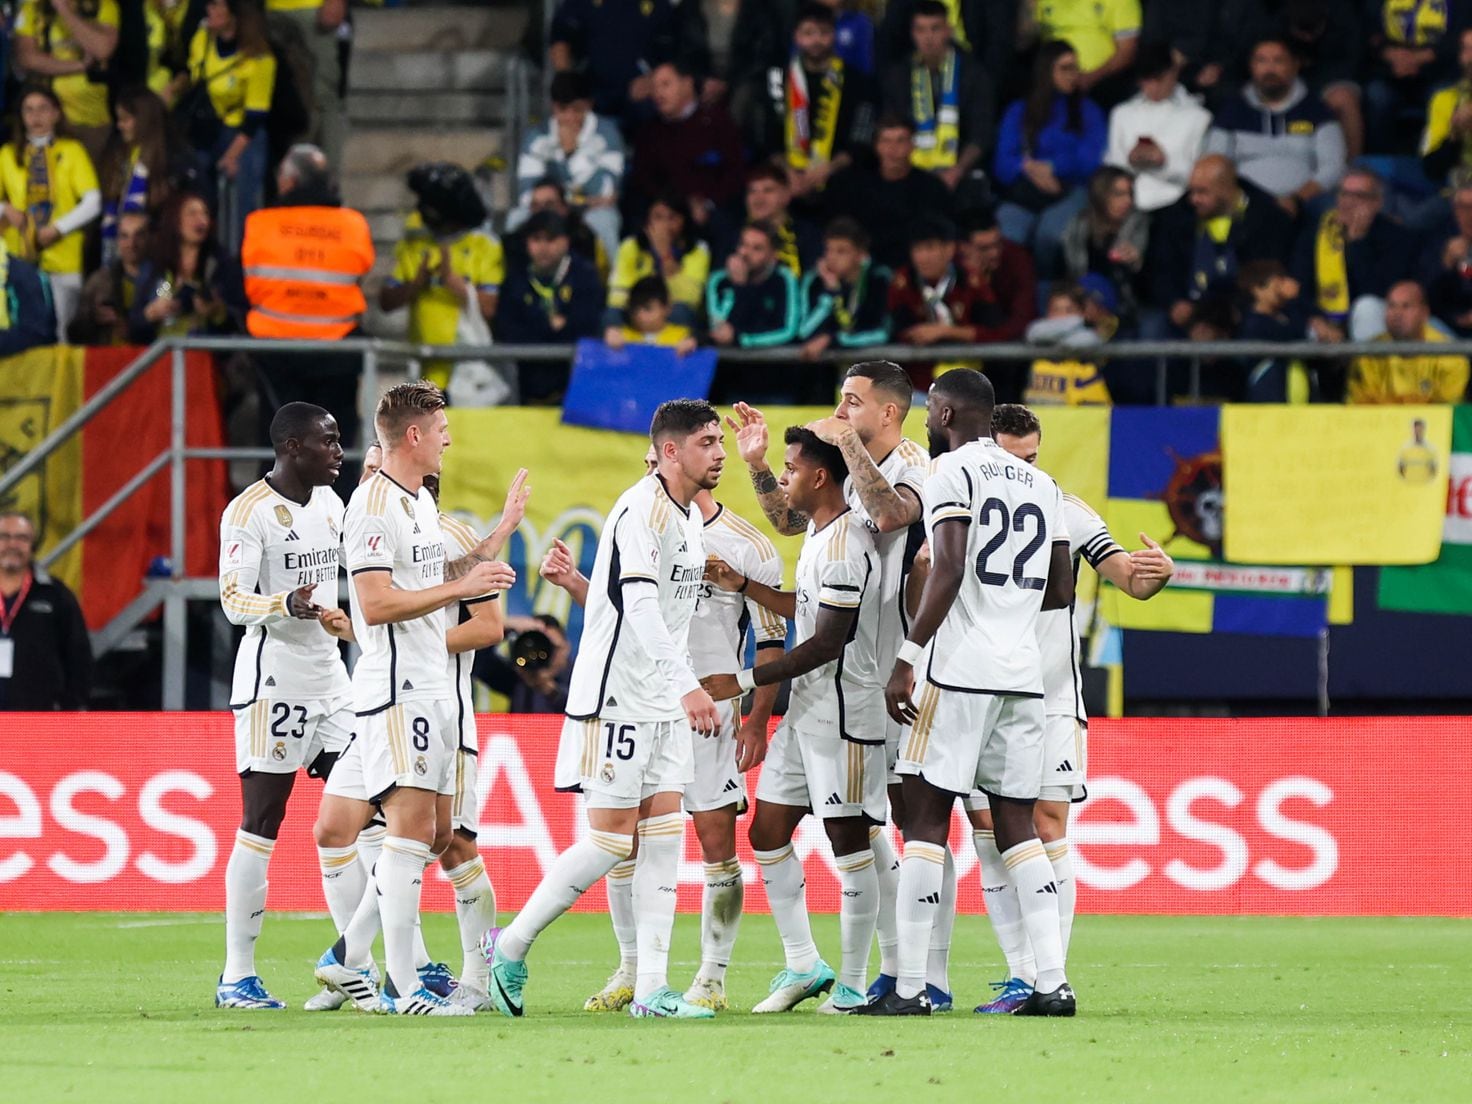 Fenerbahçe: Conheça o histórico e os destaques do famoso clube turco